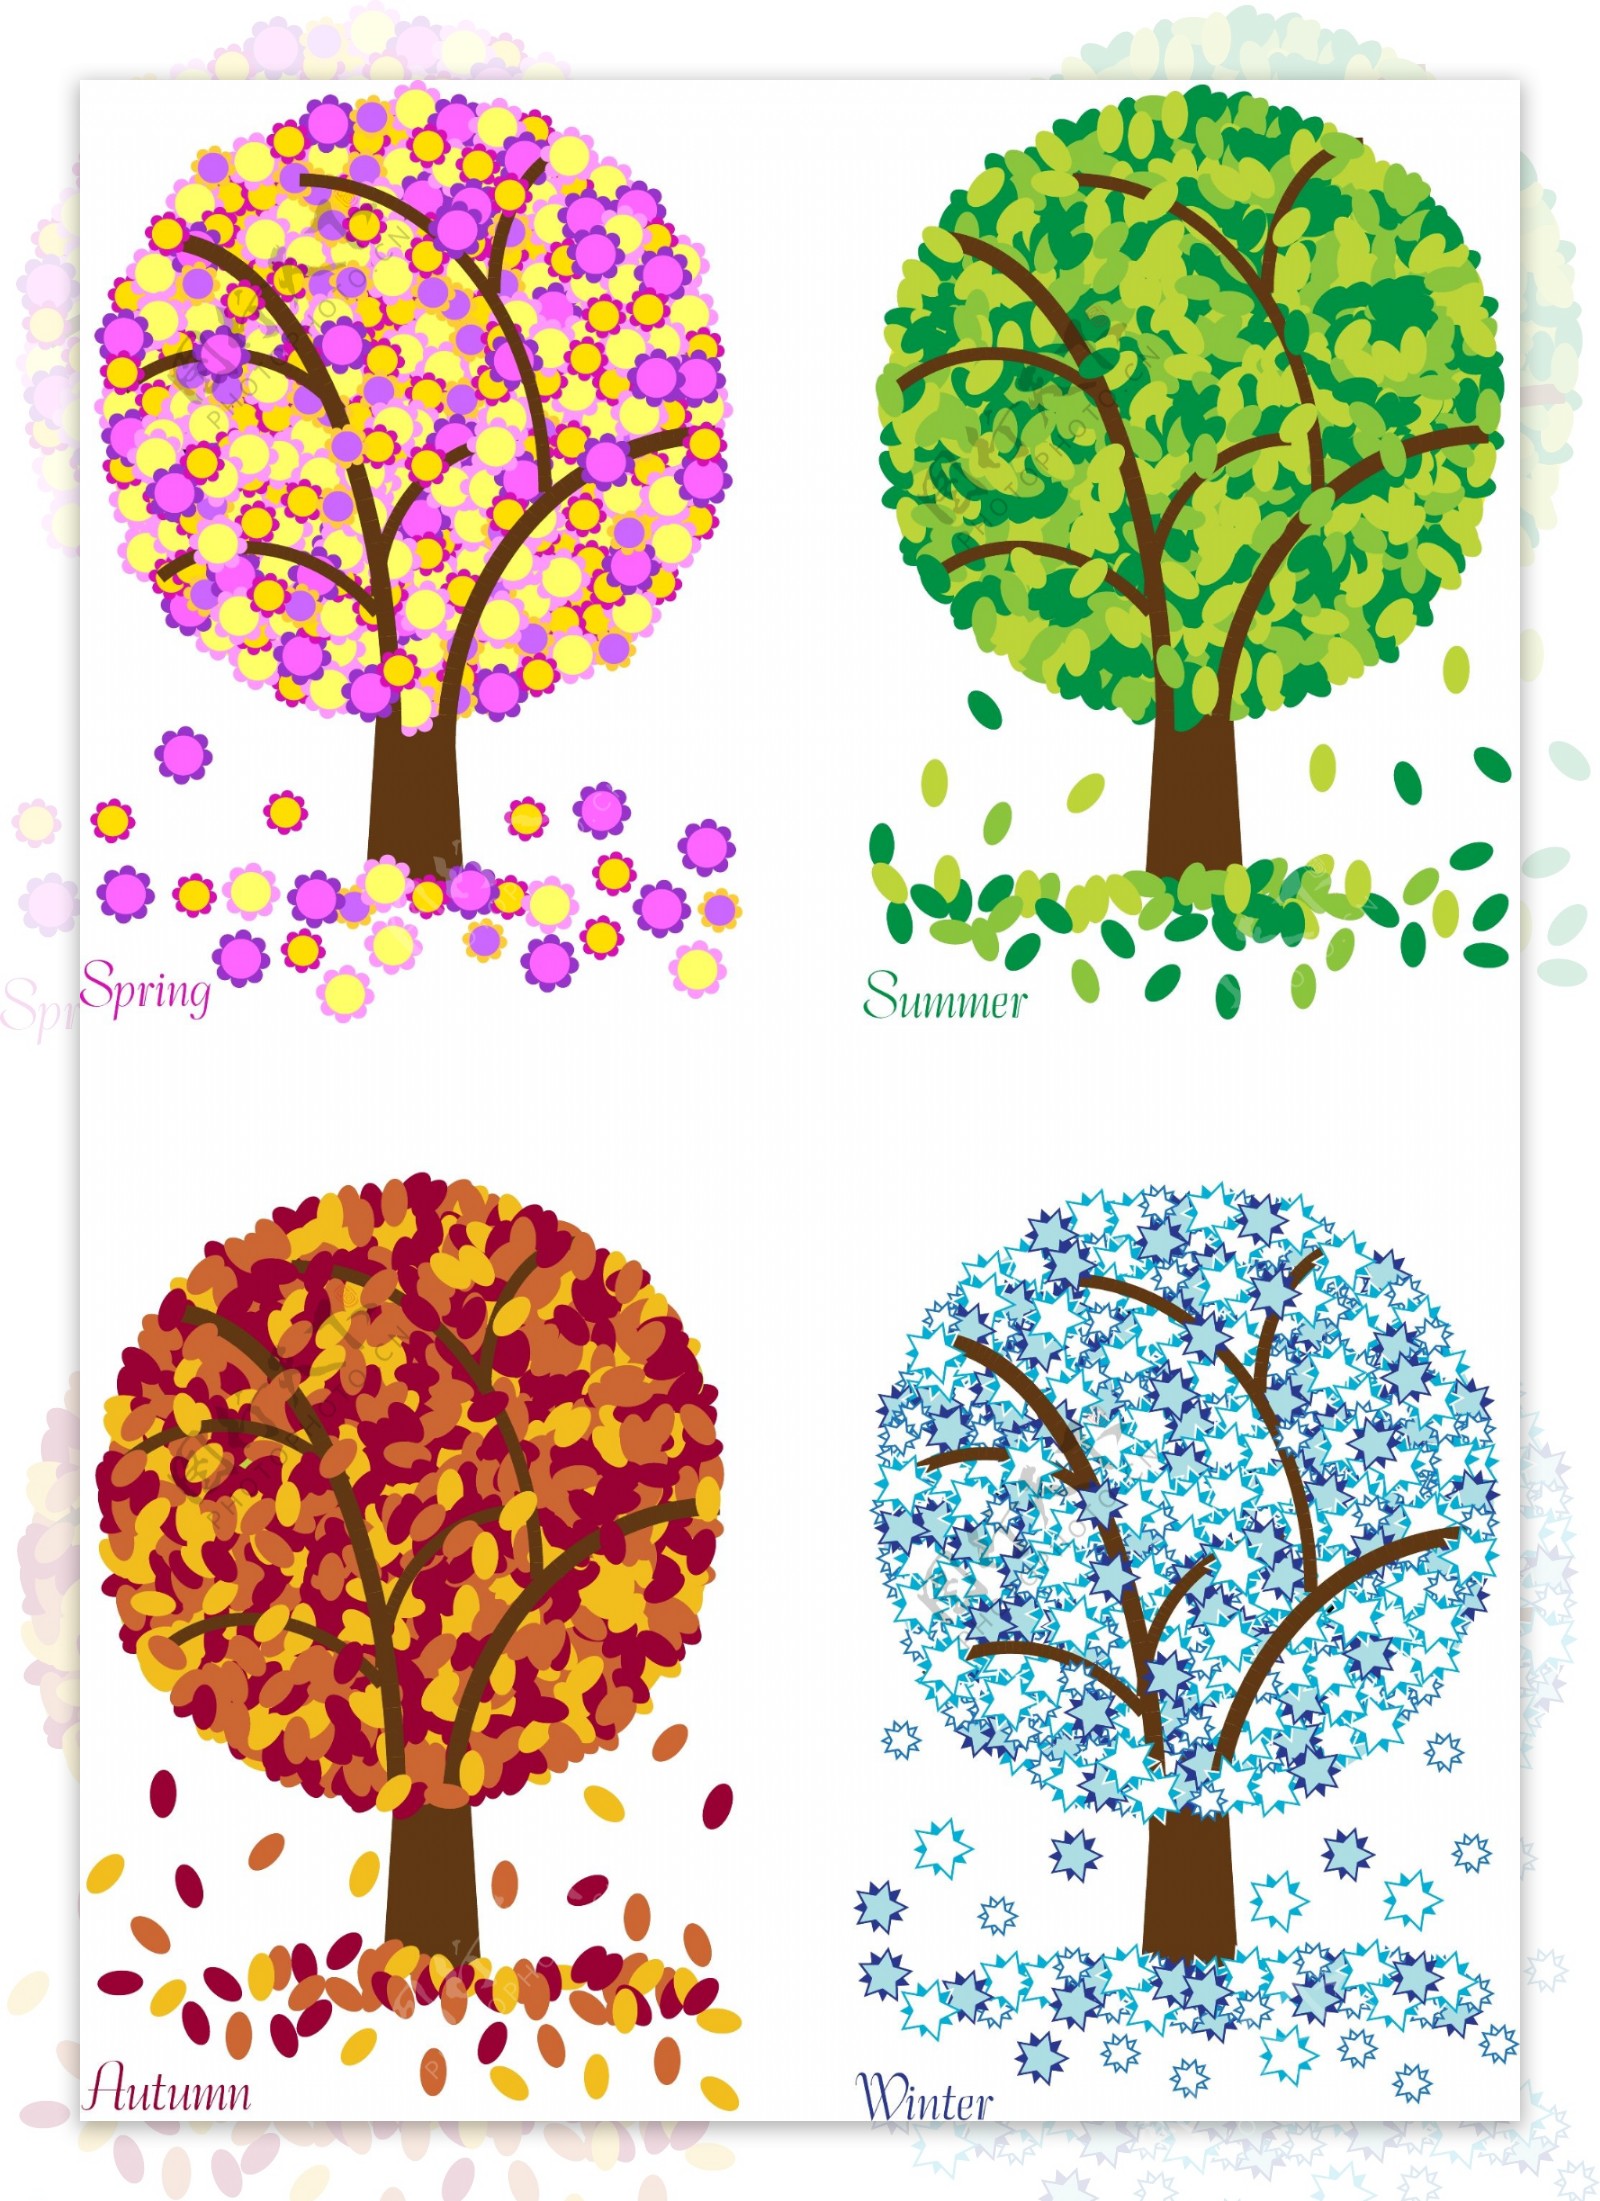 四季树木图片